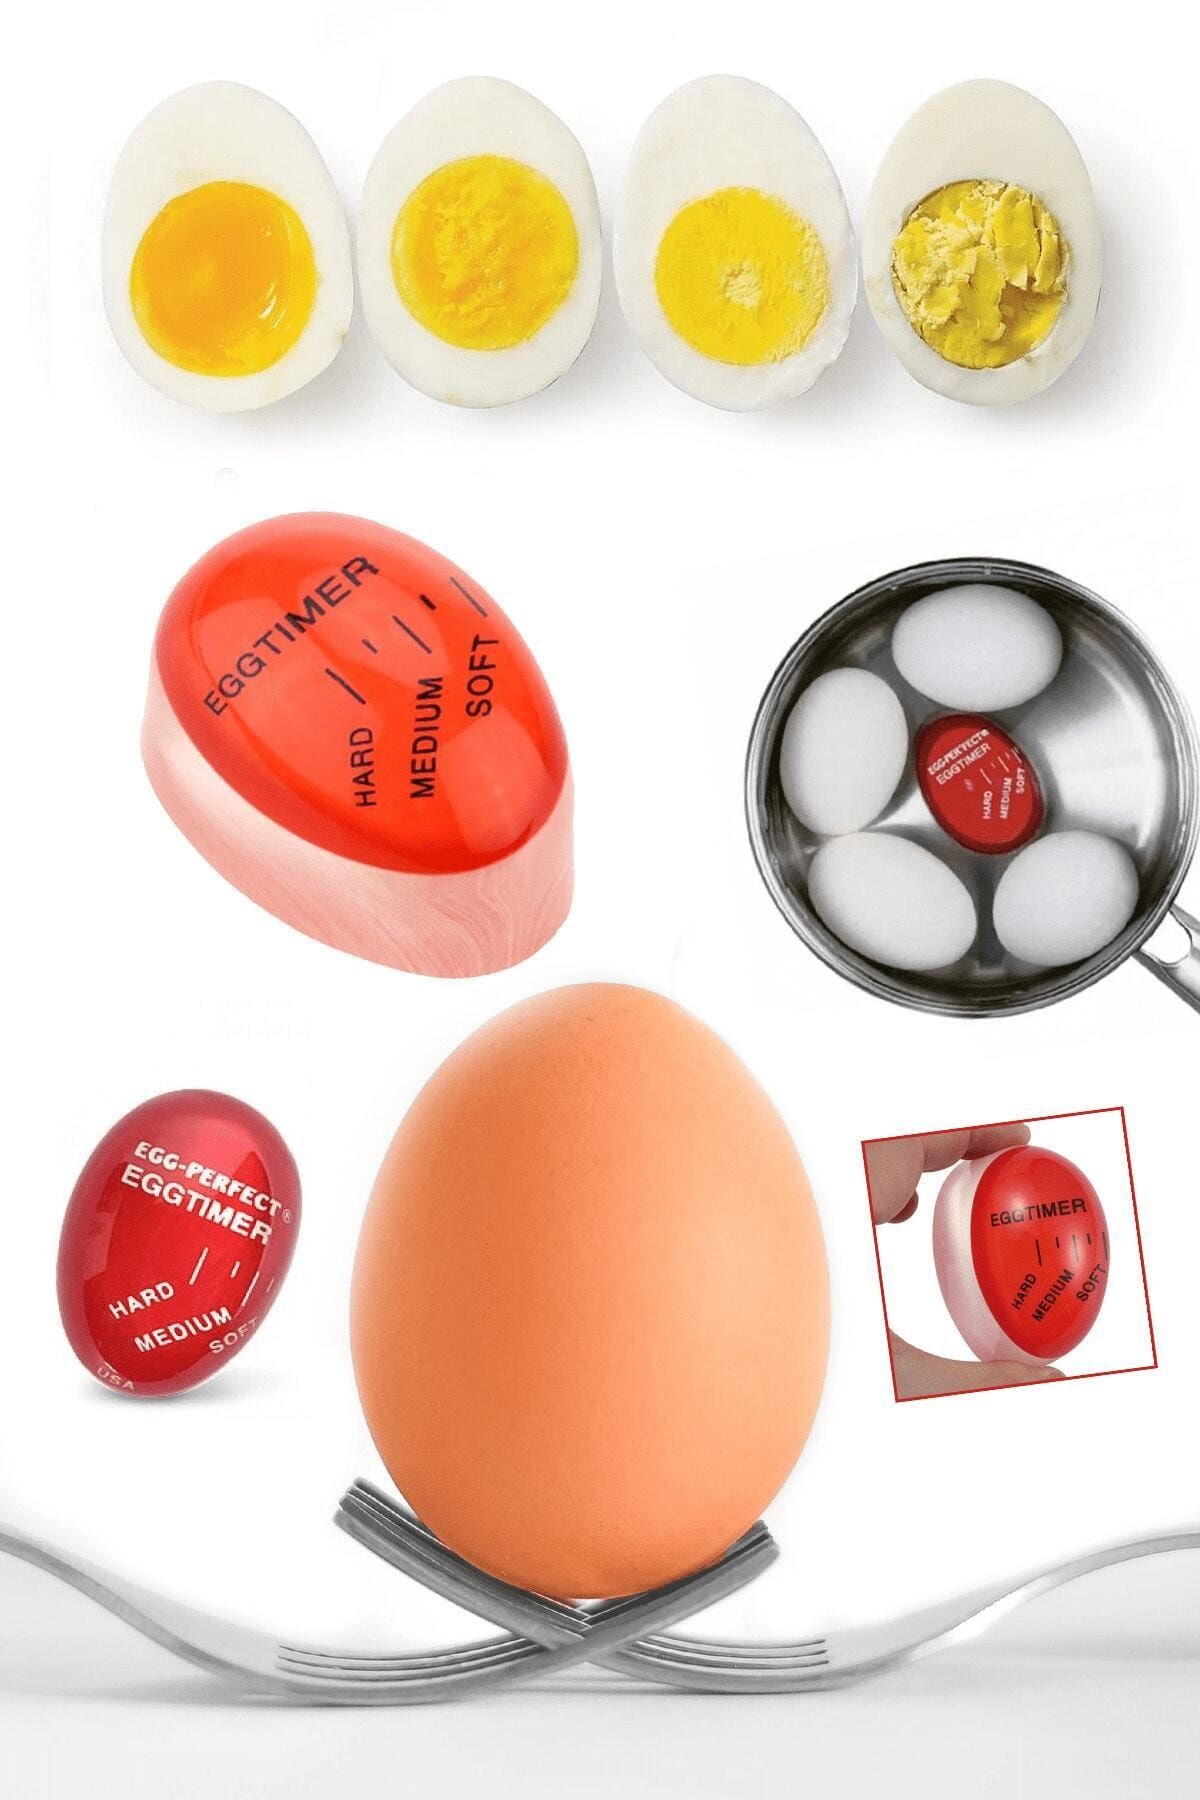 anadolu saray carsisi yumurta haslama ve pisirme aparati yumurta zamanlayici dublor yumurta fiyati yorumlari trendyol